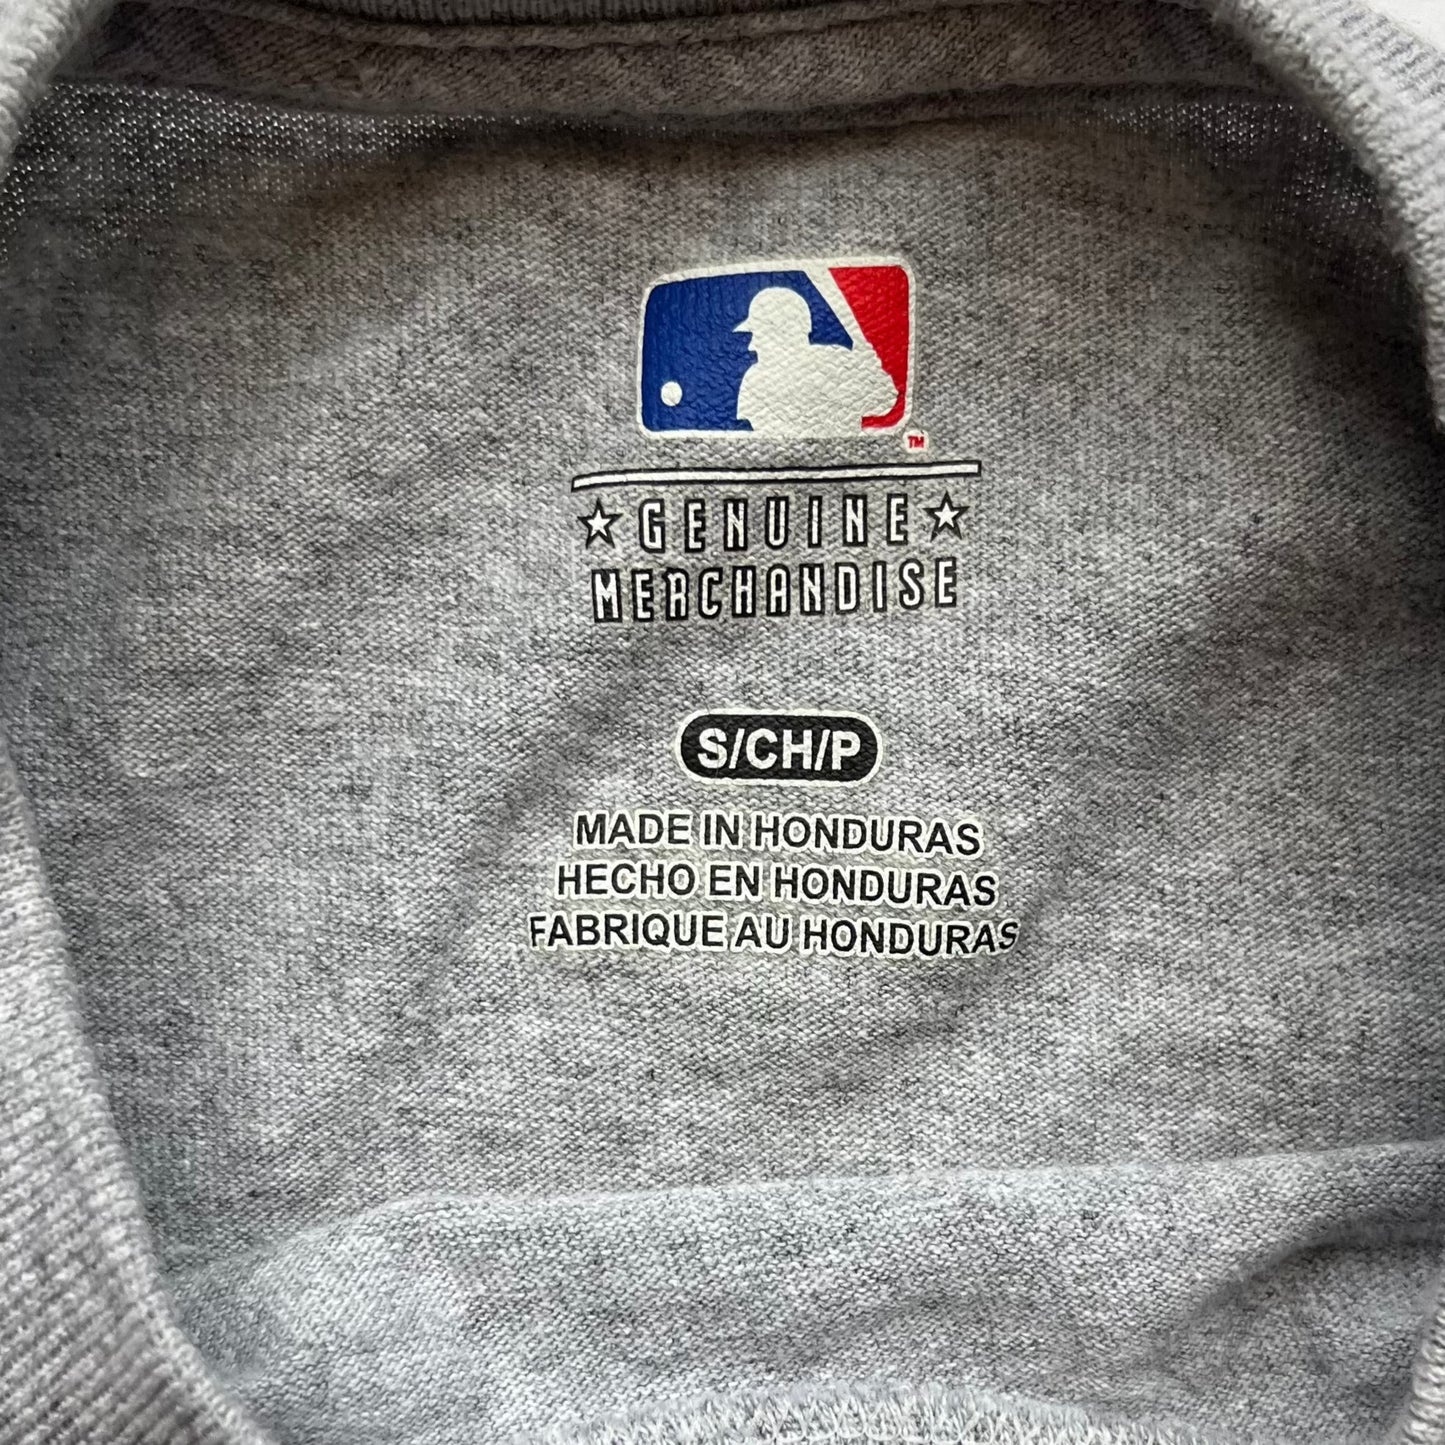 Detroit Tigers - MLB - MLB Genuine Merchandise Tee (Small)